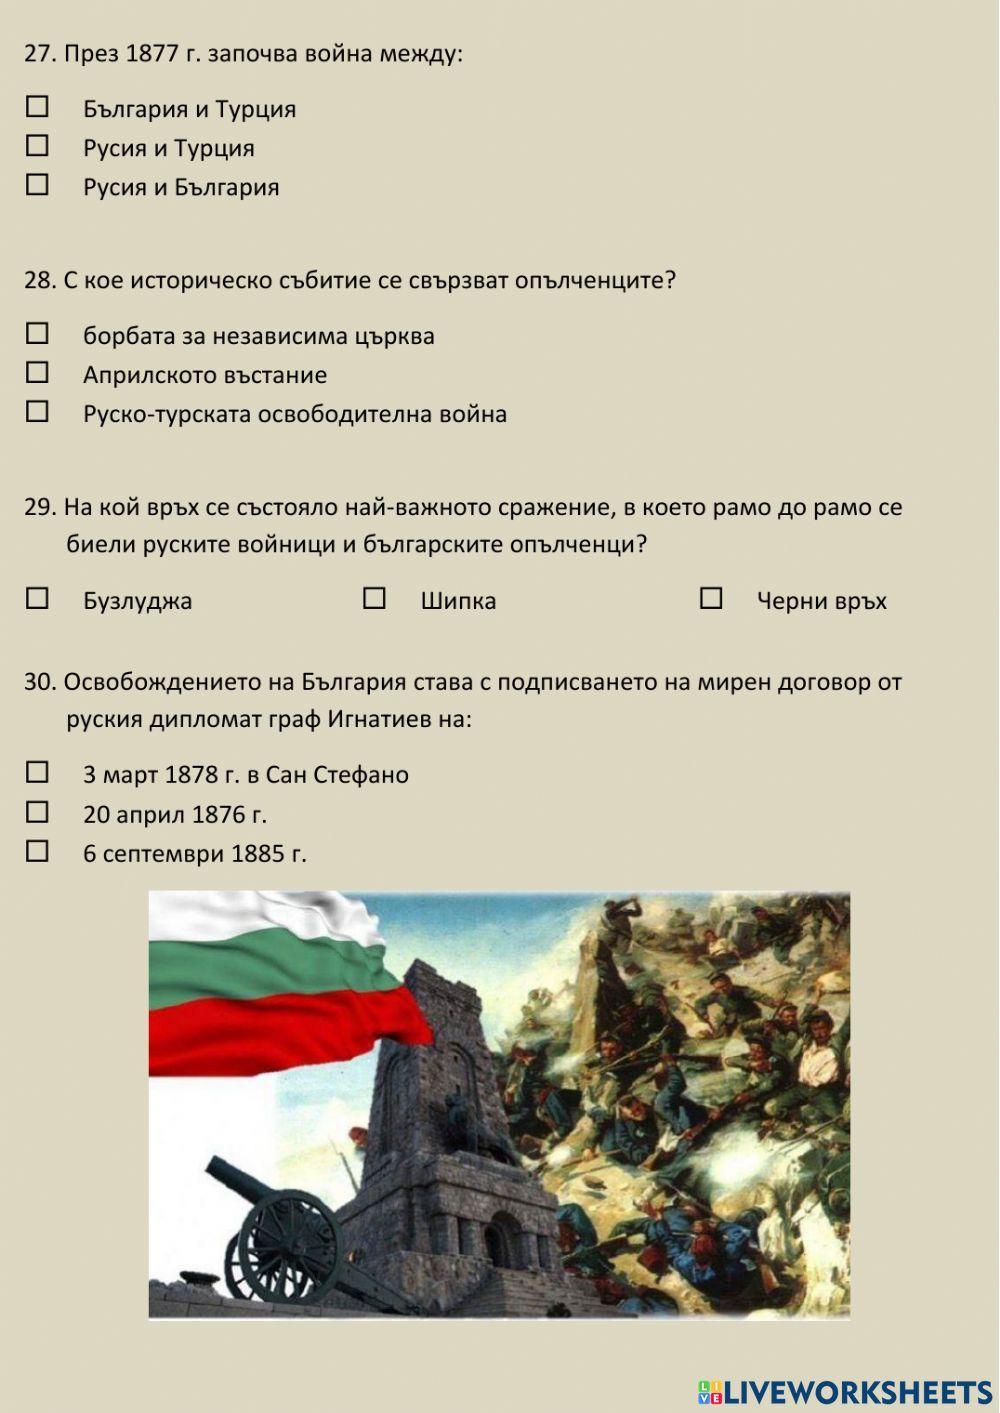 Възраждане, Априлско въстание и Освобождение на България